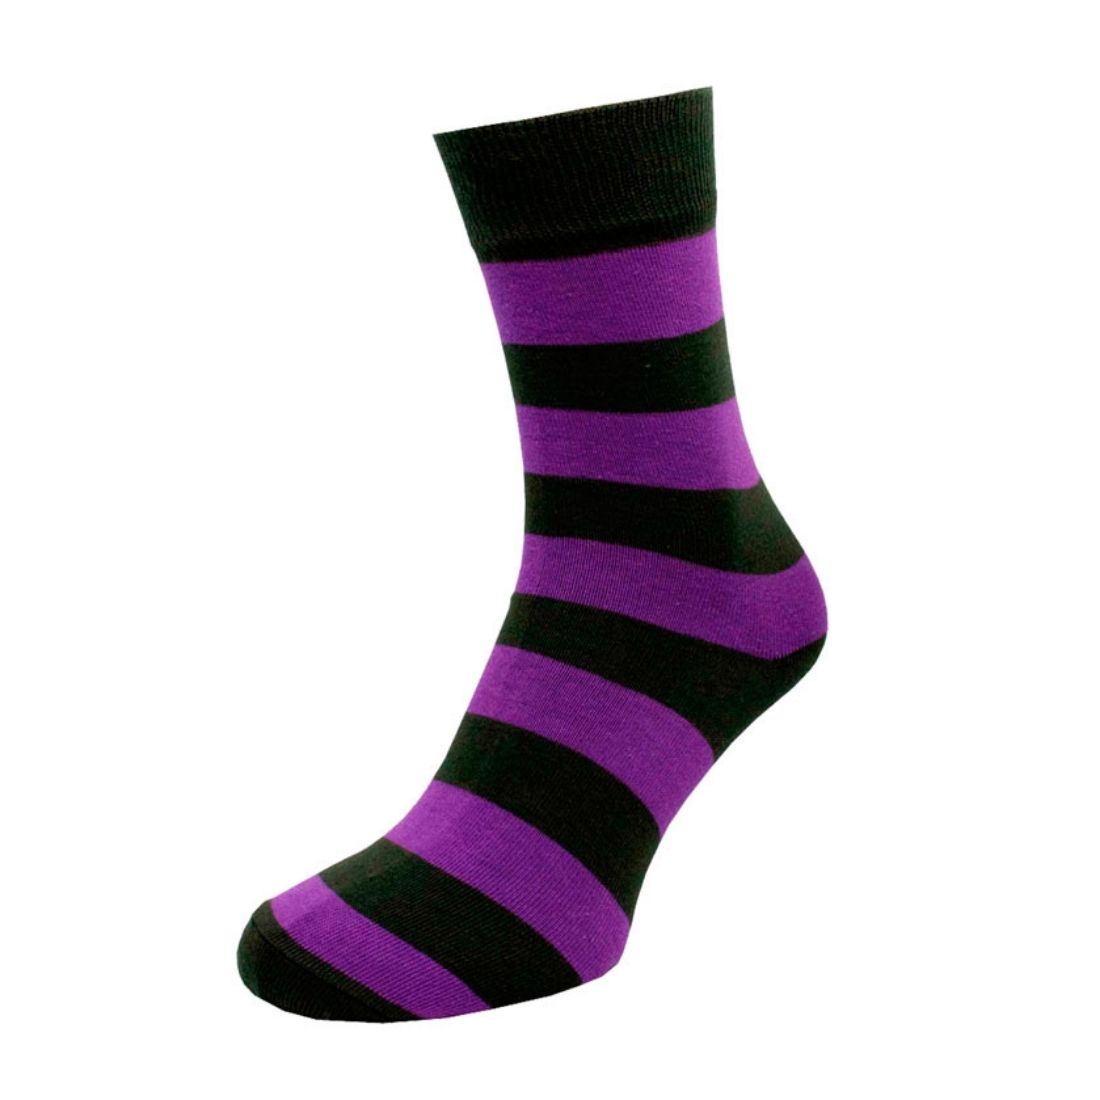 Носки мужские цветные из хлопка, фиолетовая полоска MansSet - Фото 1